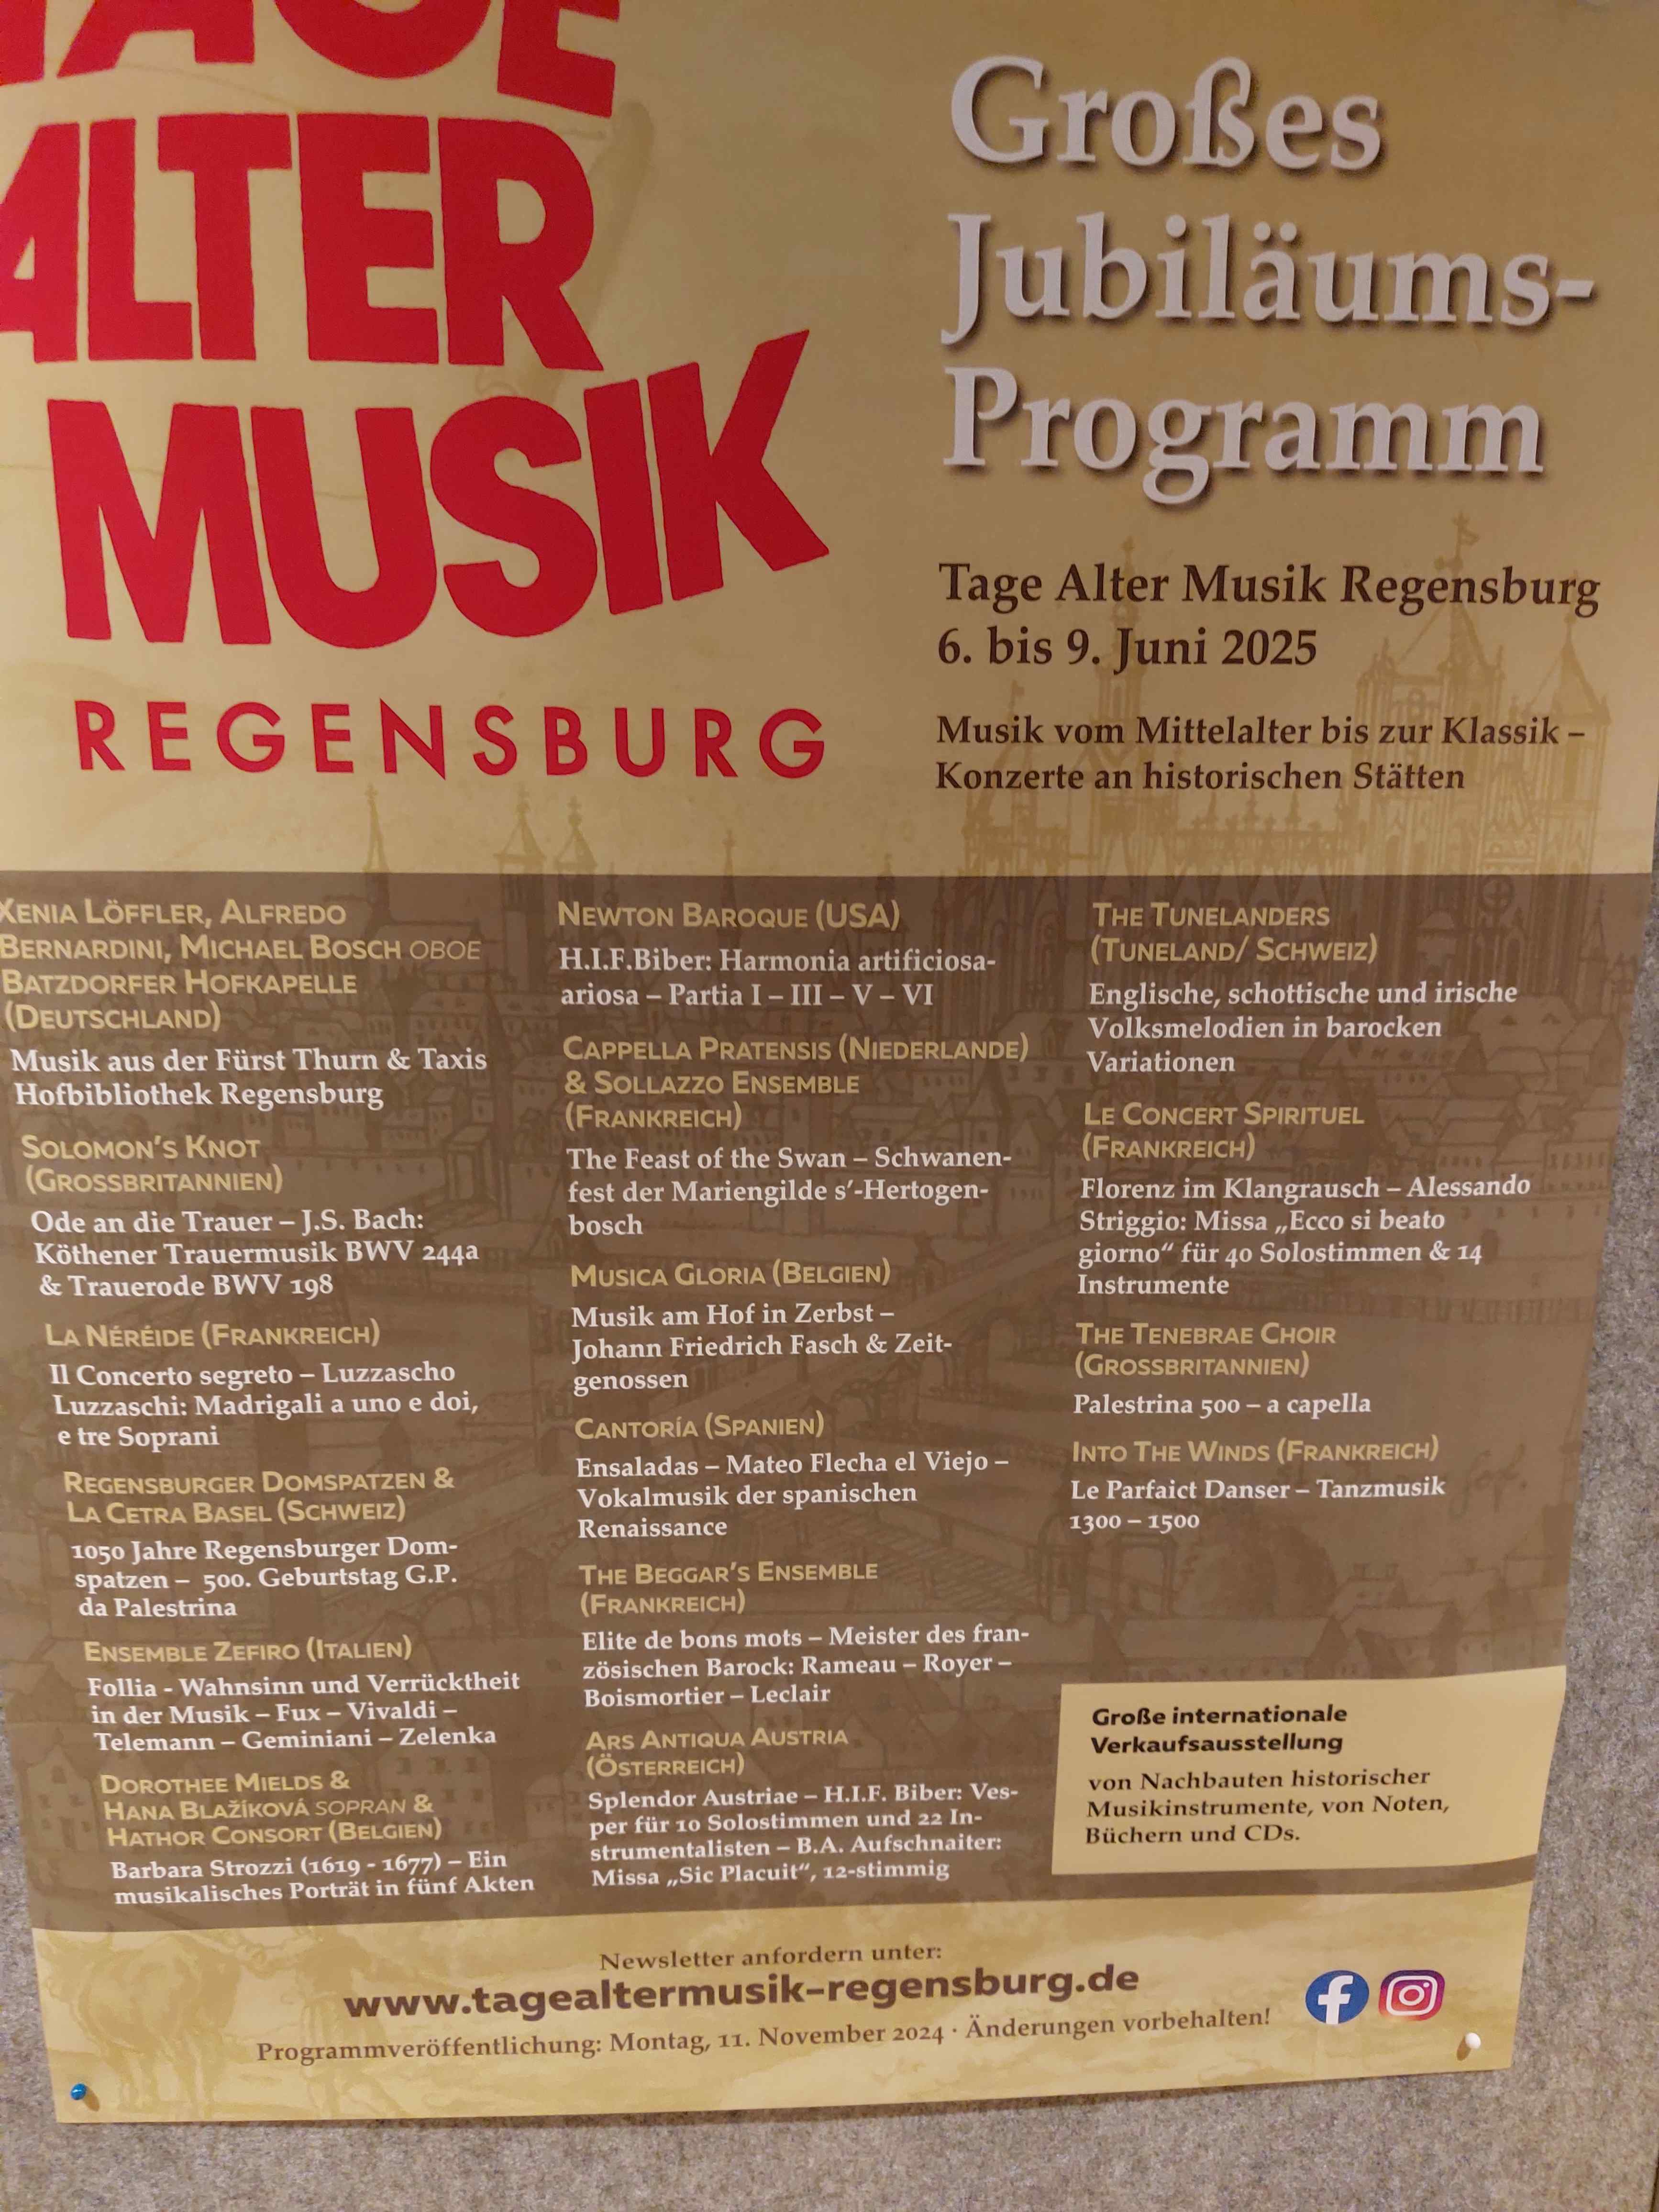 Vorankündigungsplakat im Salzstadel Regensburg für das Jubiläumsfestival 2025.l 2025